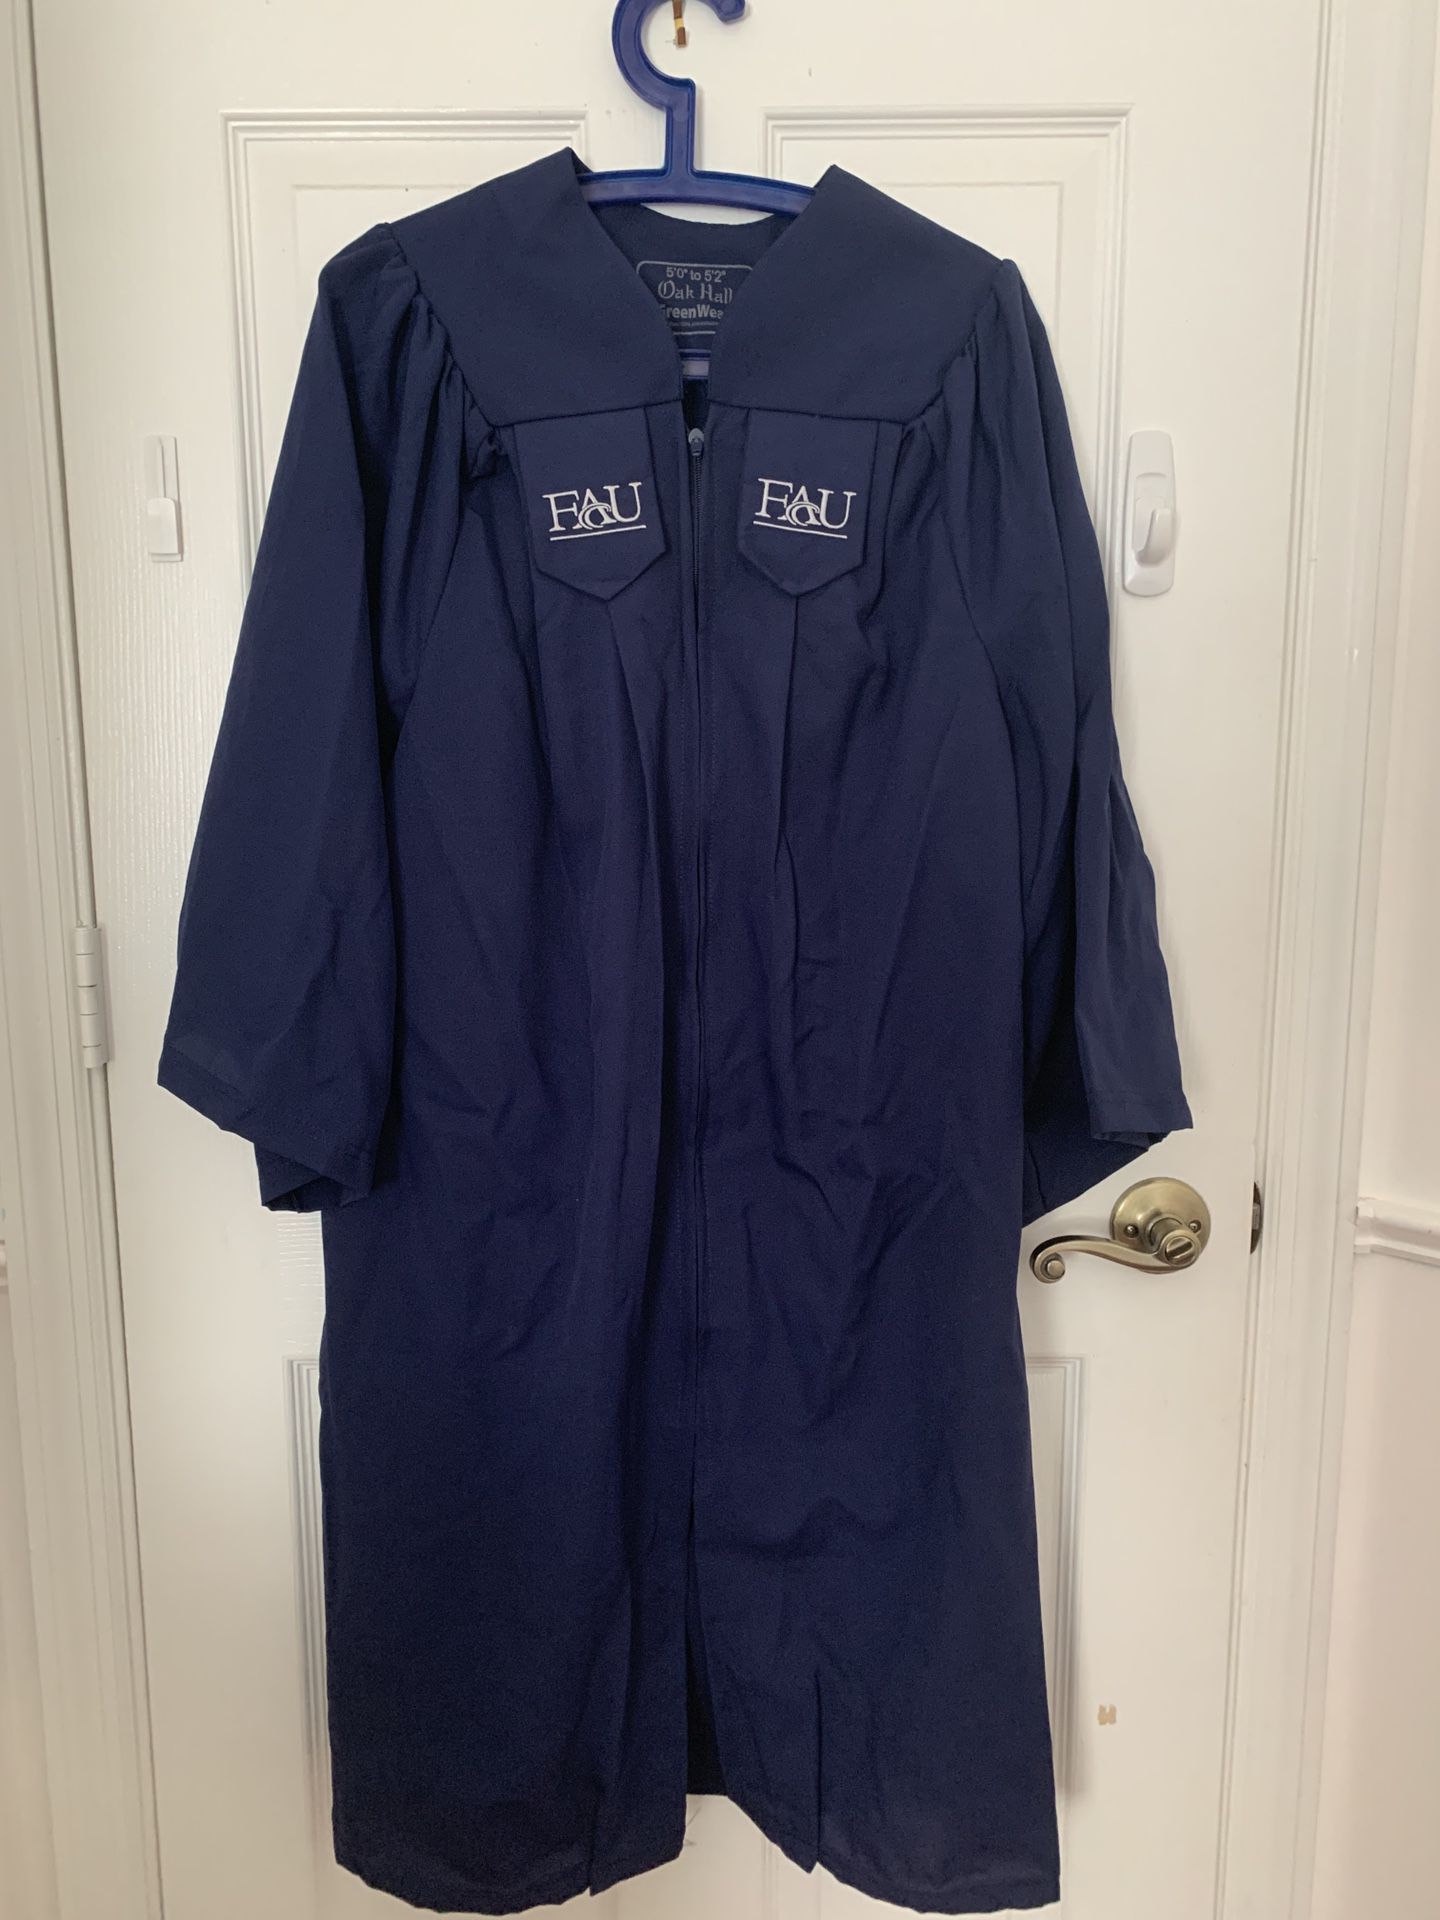 FAU Graduation Gown